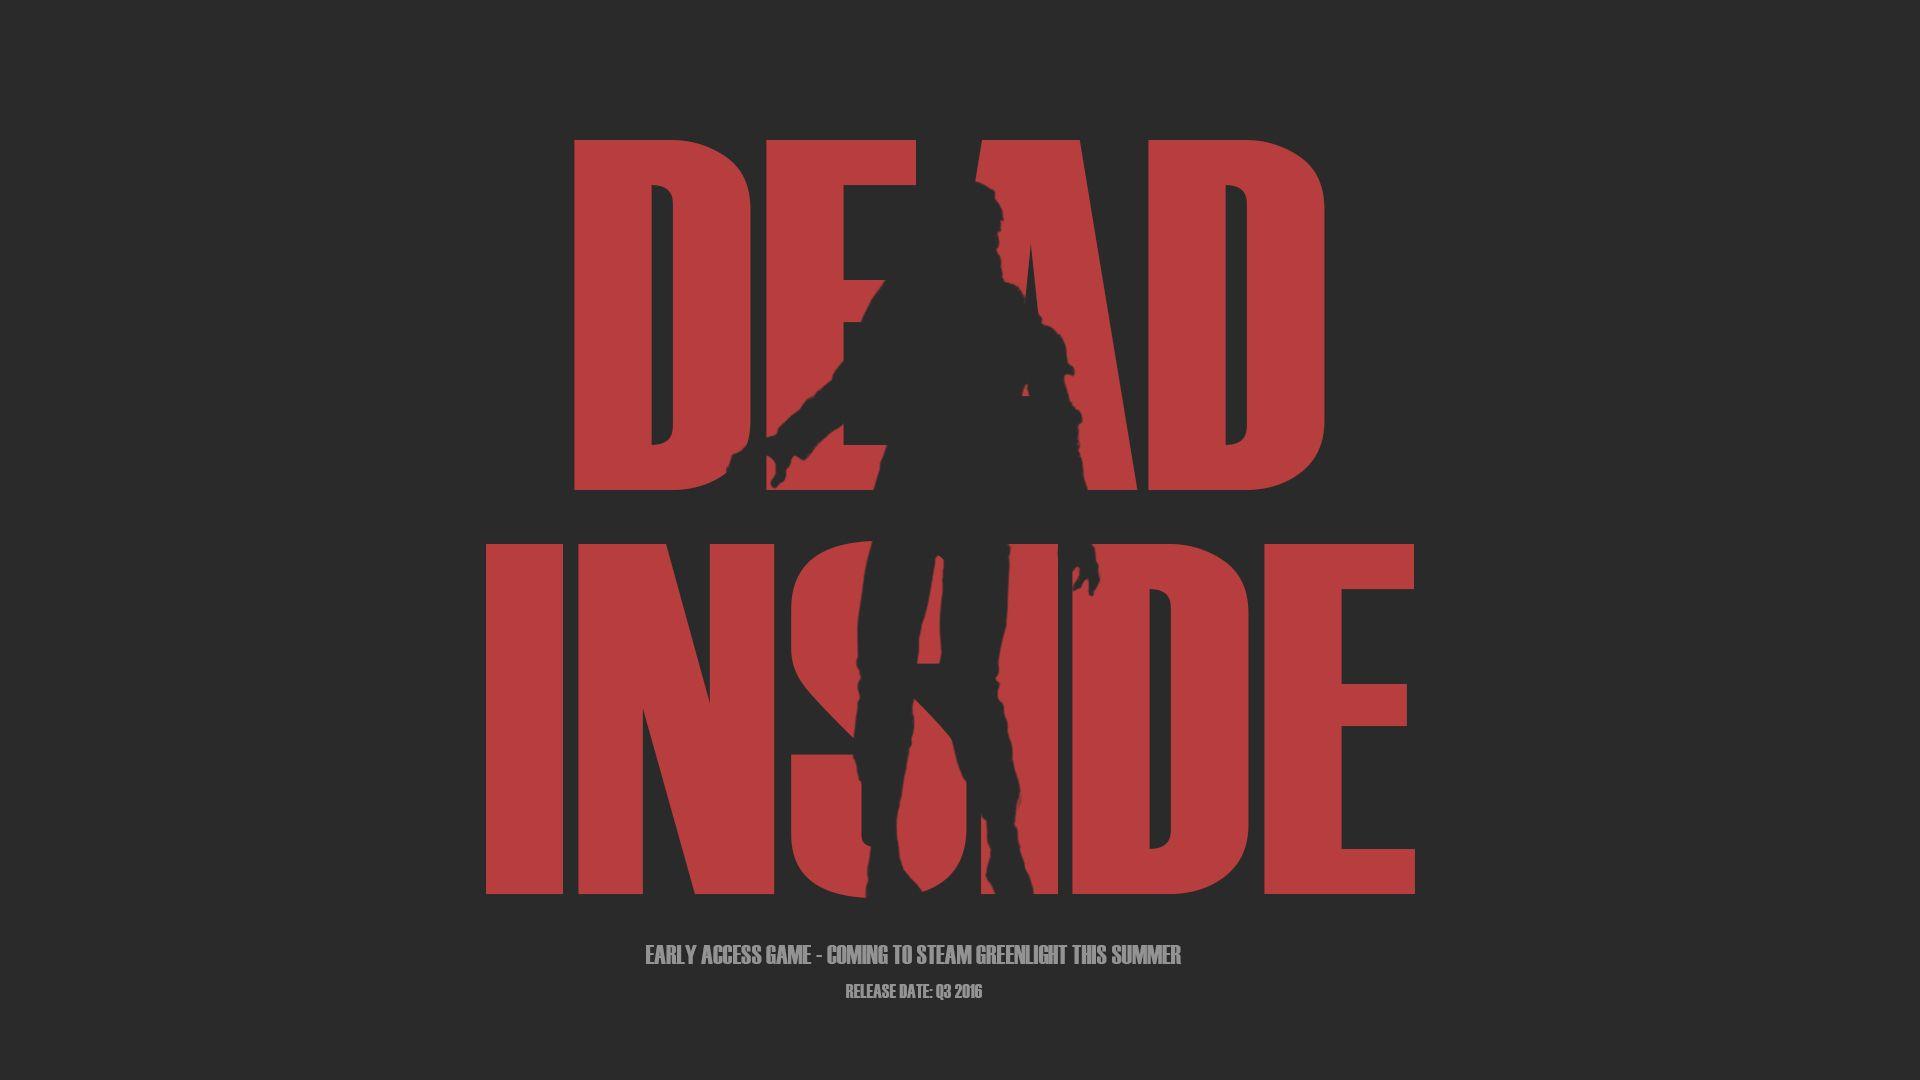 DEAD INSIDE wallpaper by maxx0107  Download on ZEDGE  fca5